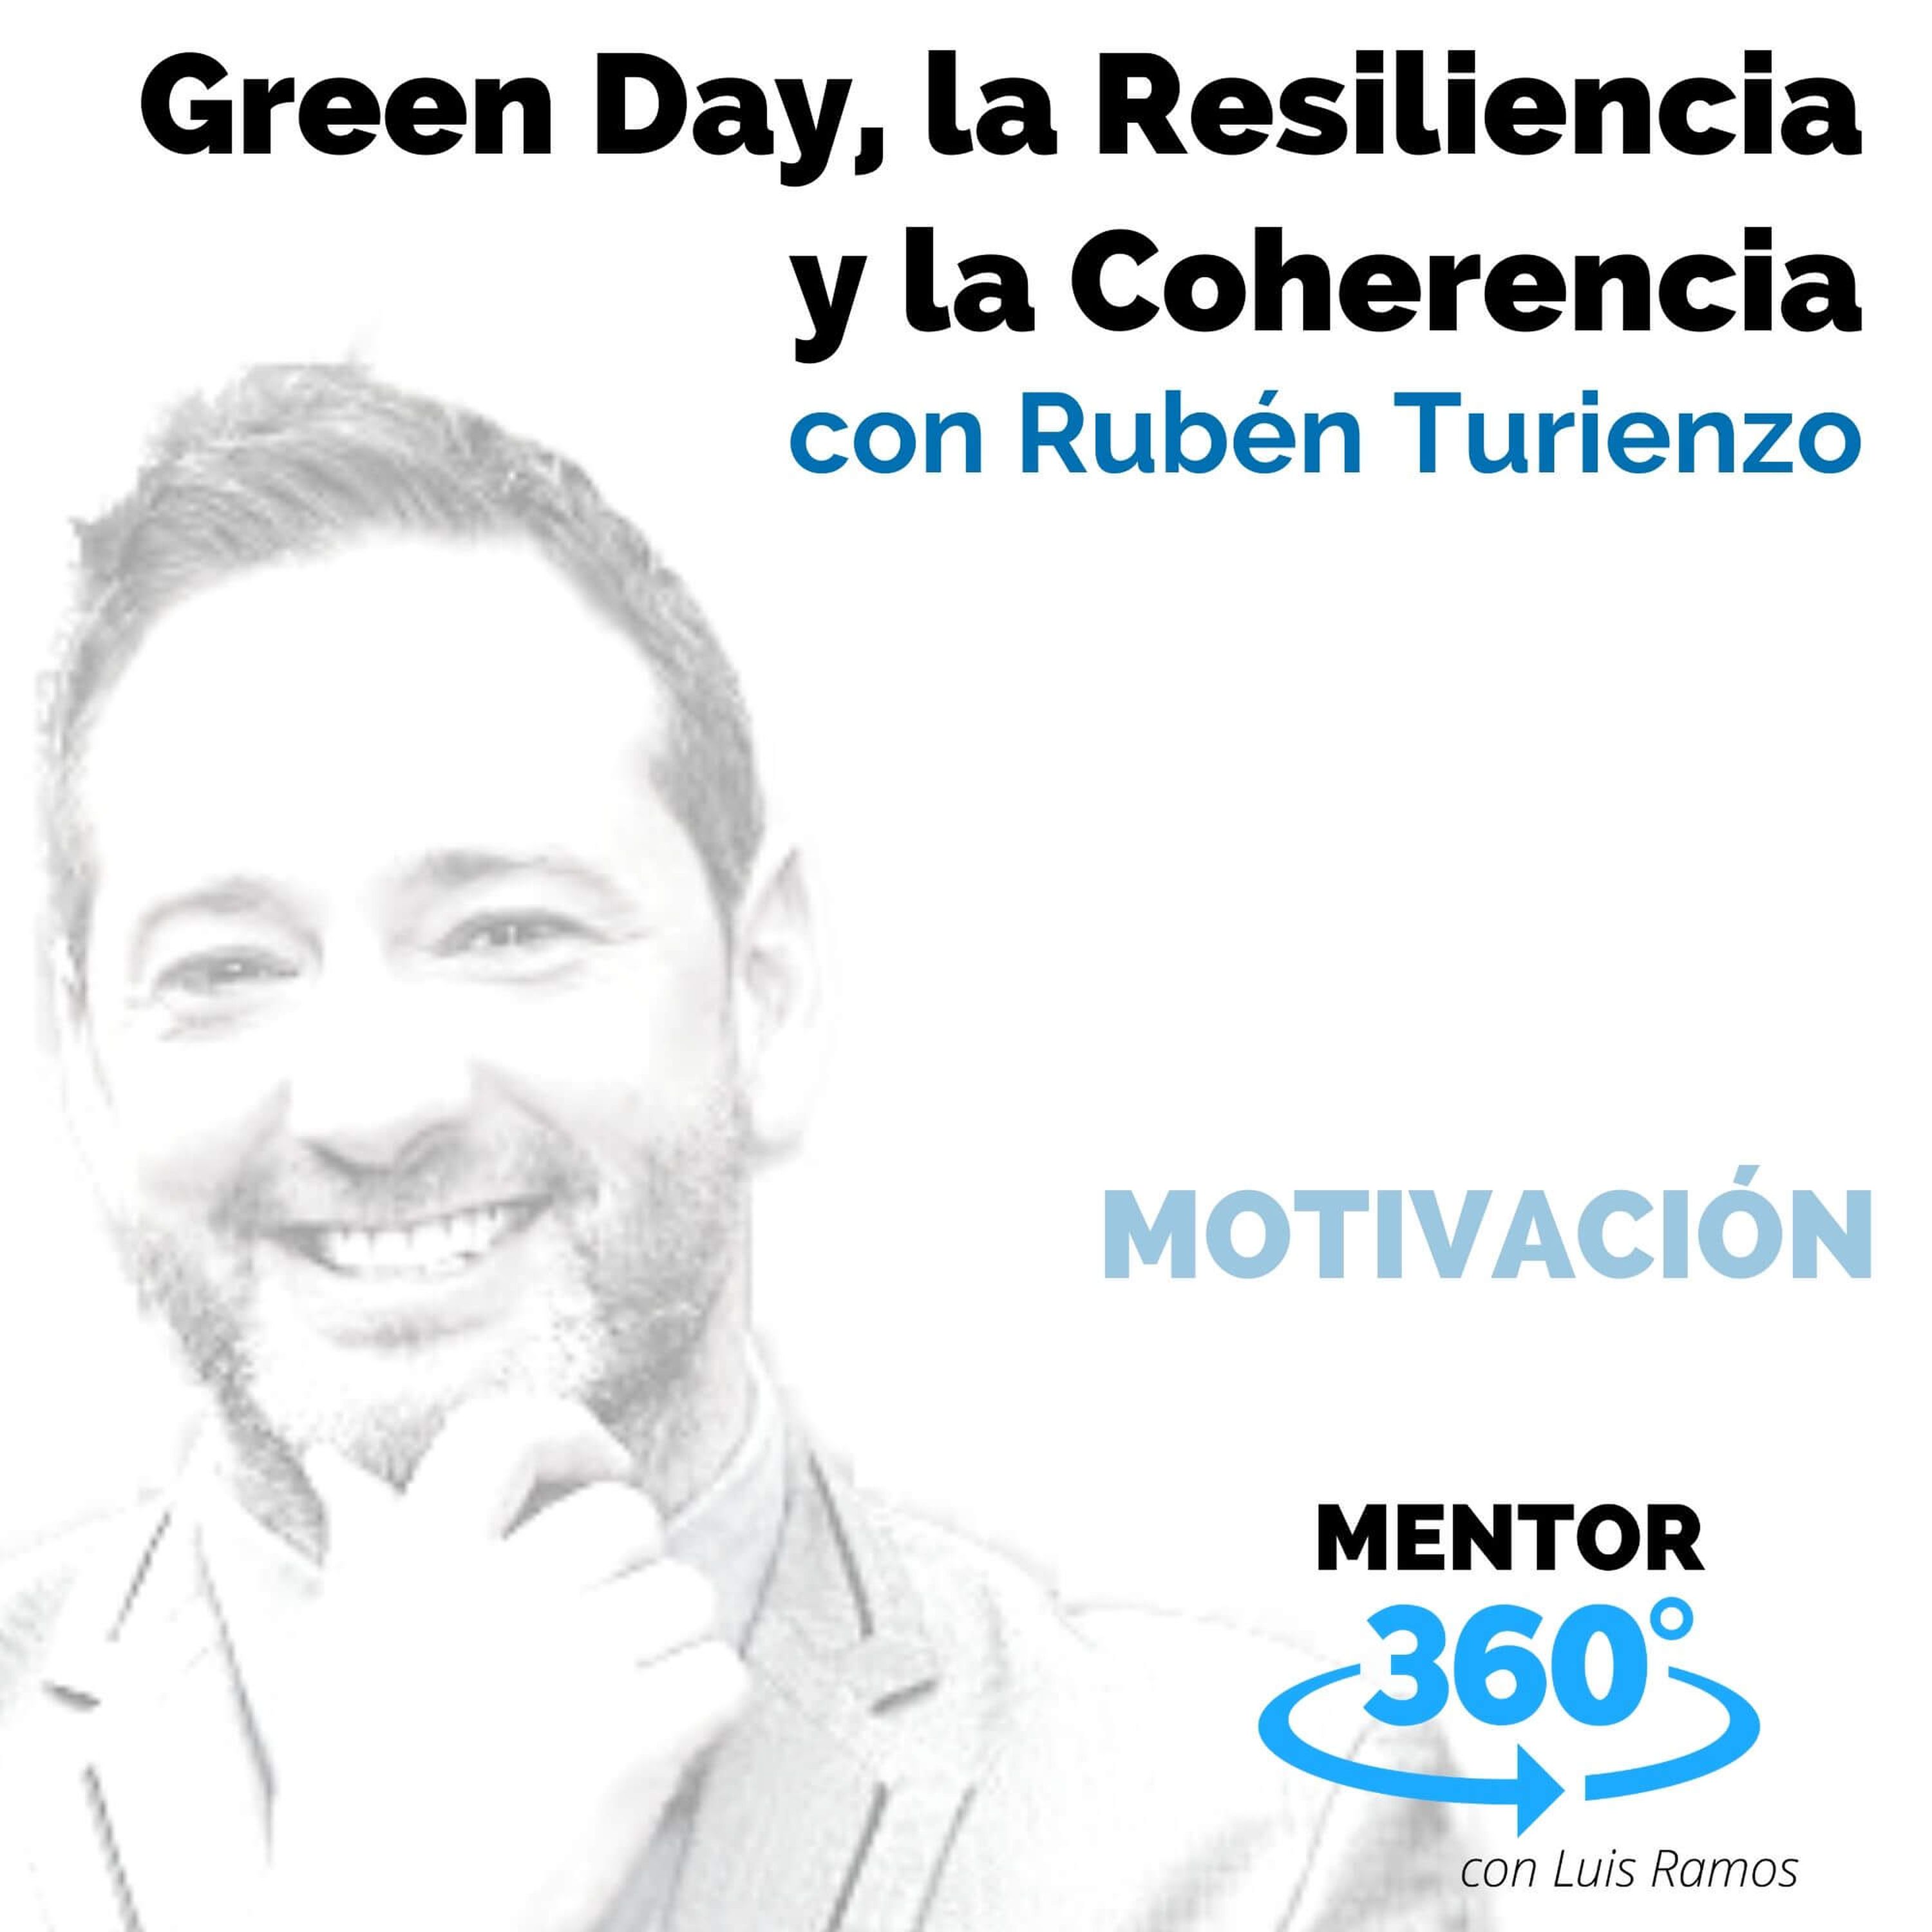 Green Day, la Resiliencia y la Coherencia, con Rubén Turienzo - MENTOR360